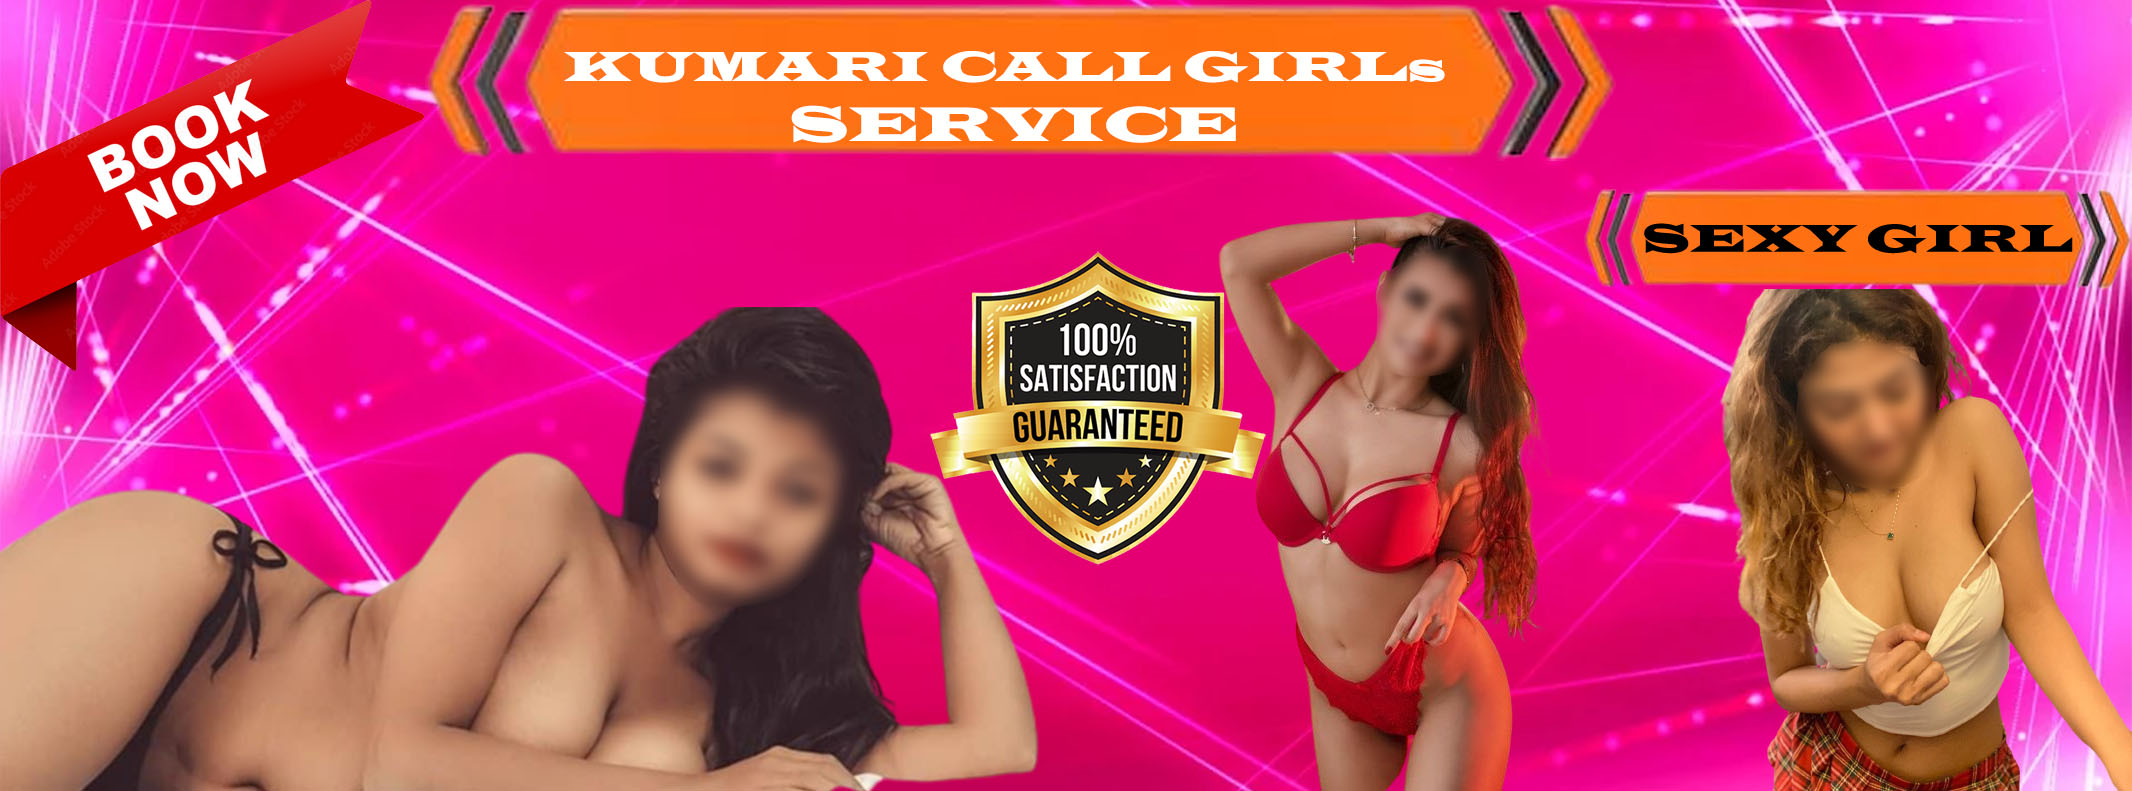 Kumari Call Girls Delhi